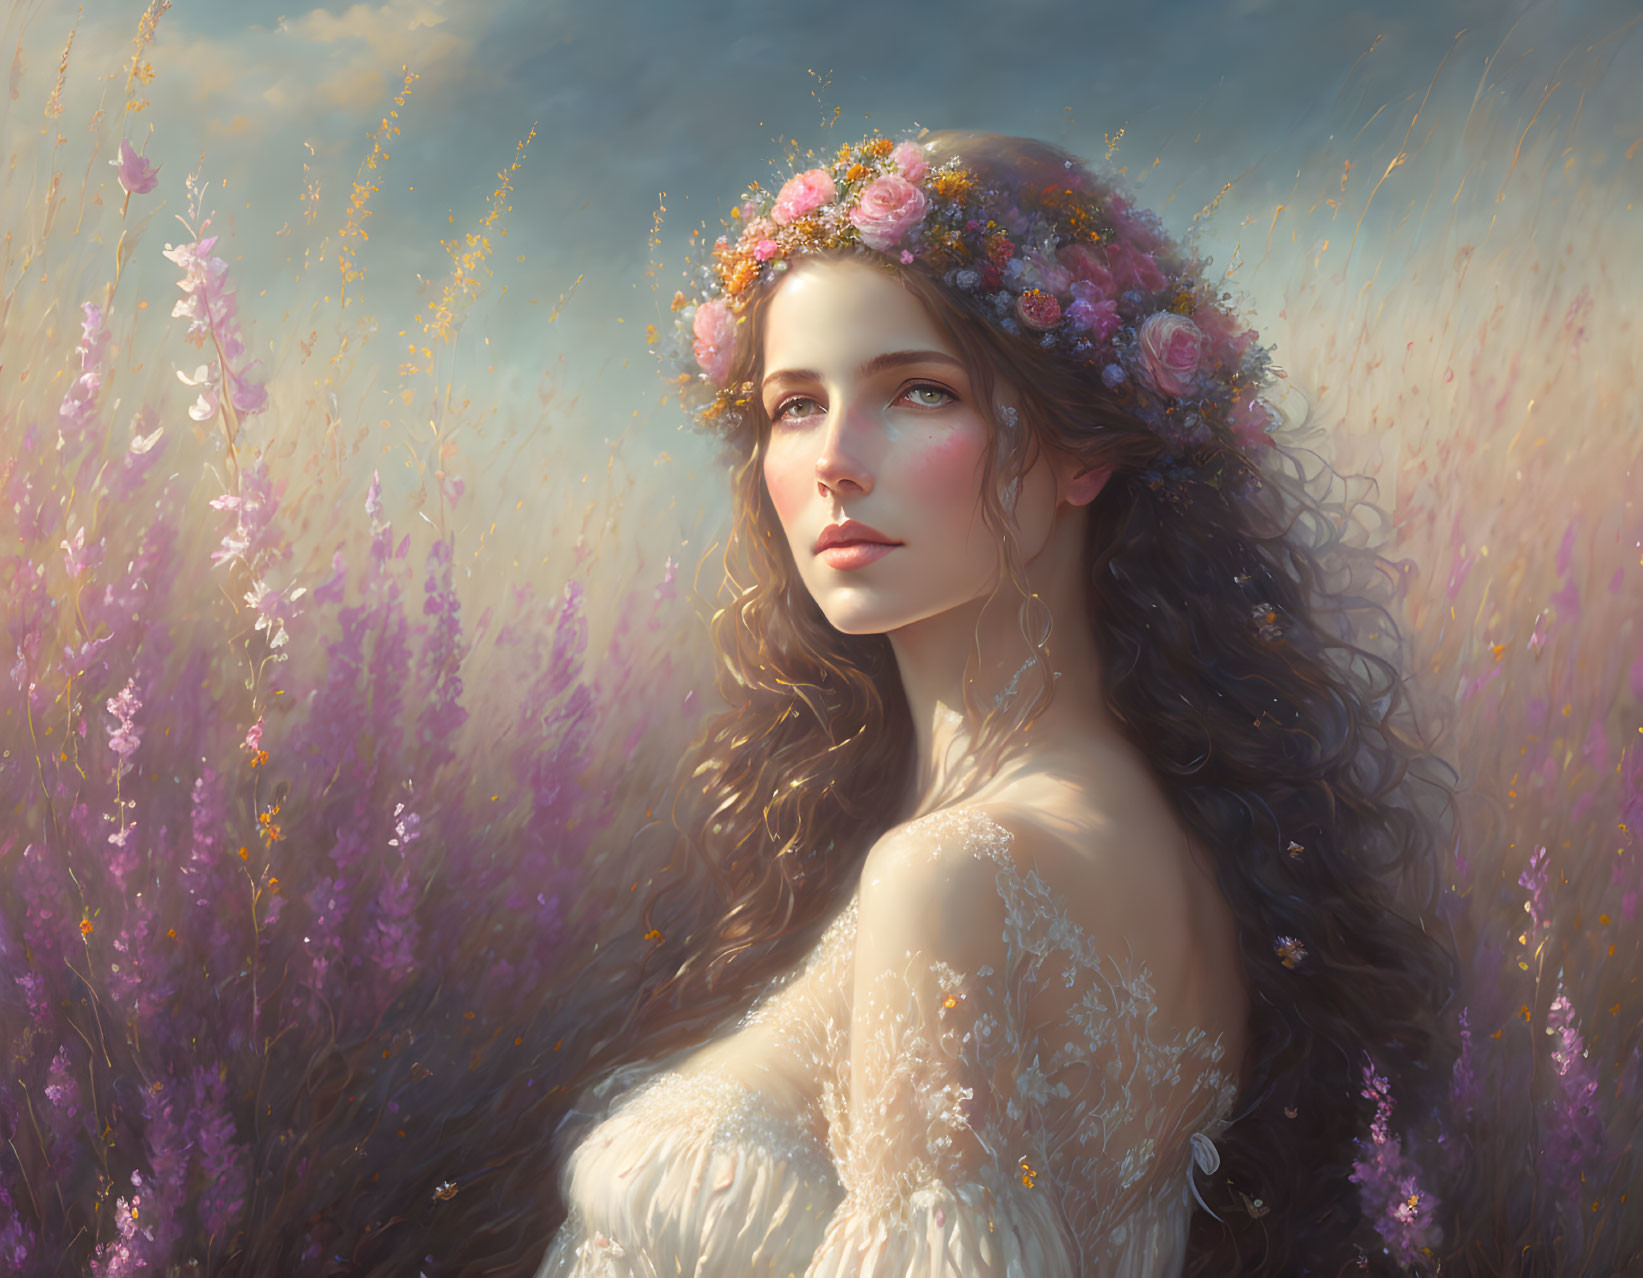 Woman in a Field of Flowers